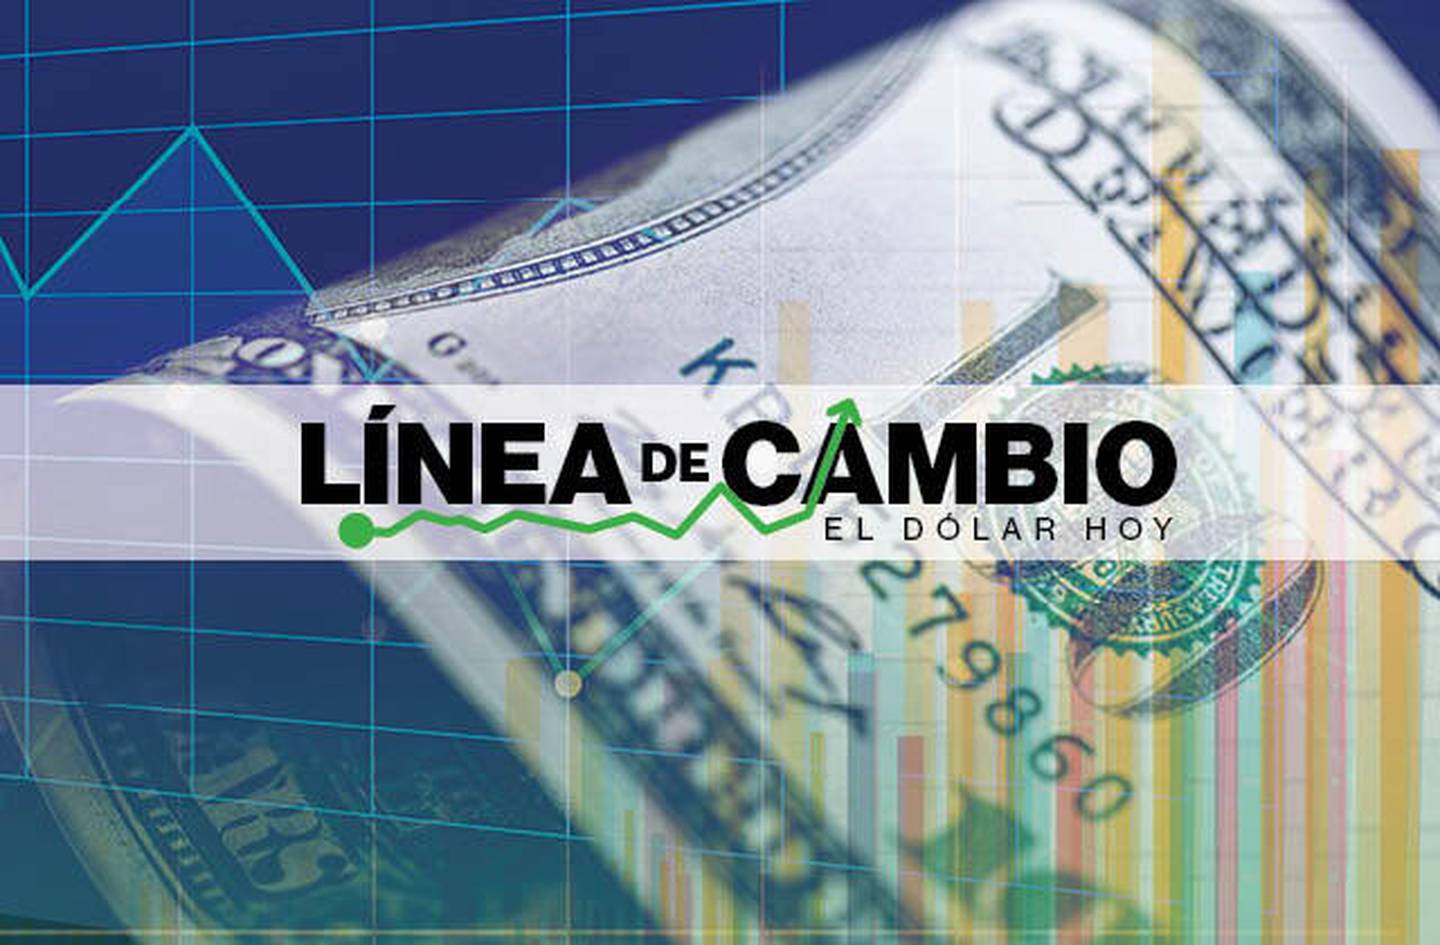 Dólar hoy: Monedas de LatAm cierran al alza; peso de Colombia lidera ganancias